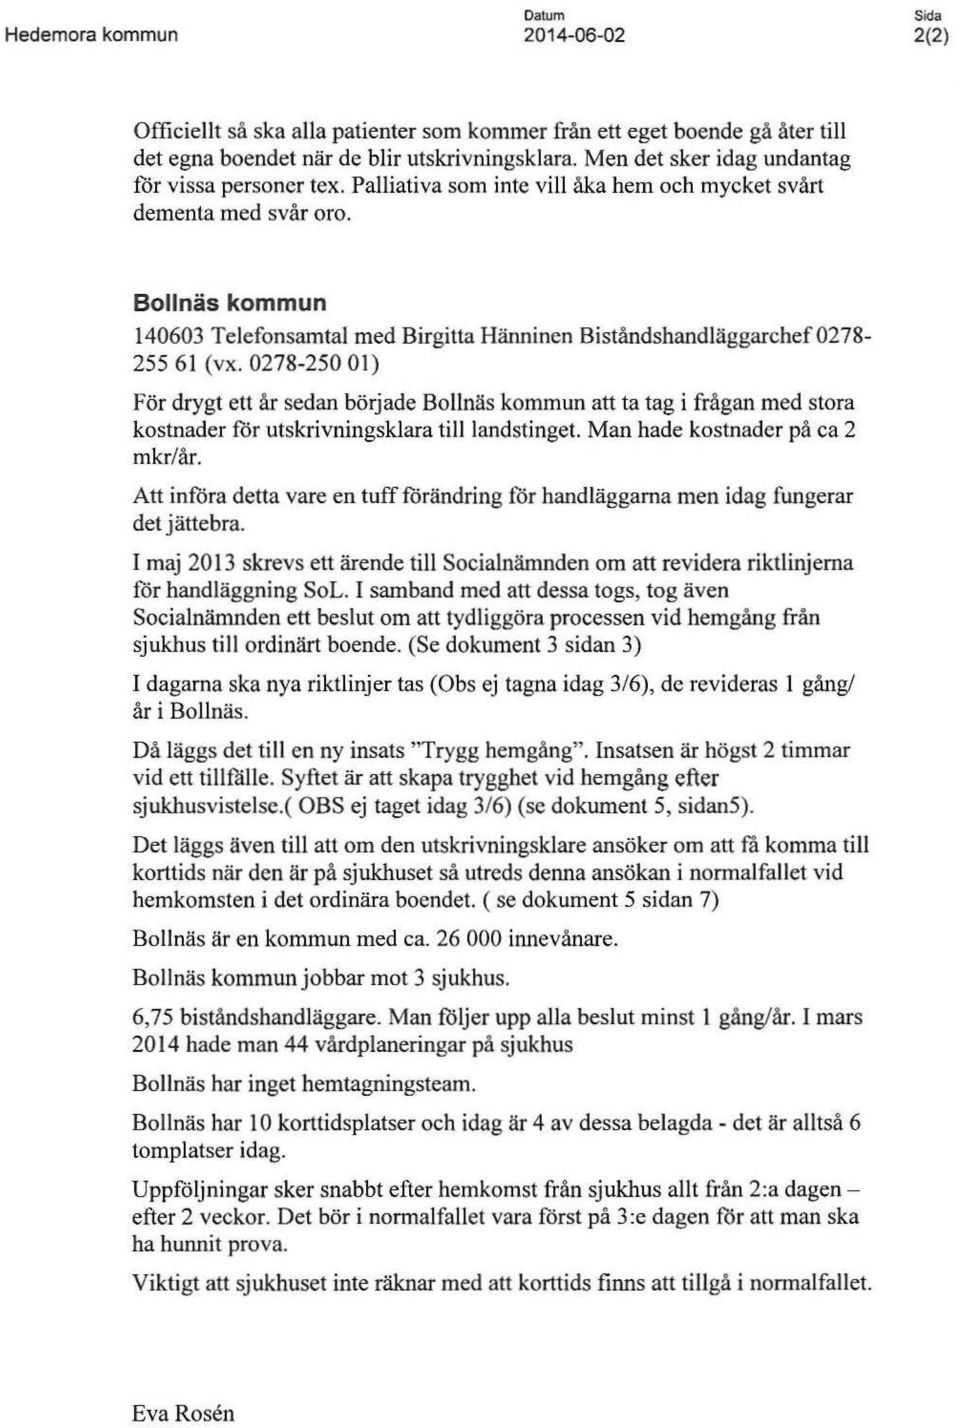 Bollnäs kommun 140603 Telefonsamtal med Birgitta Hänninen Biståndshandläggarchef 0278-255 61 (v x.